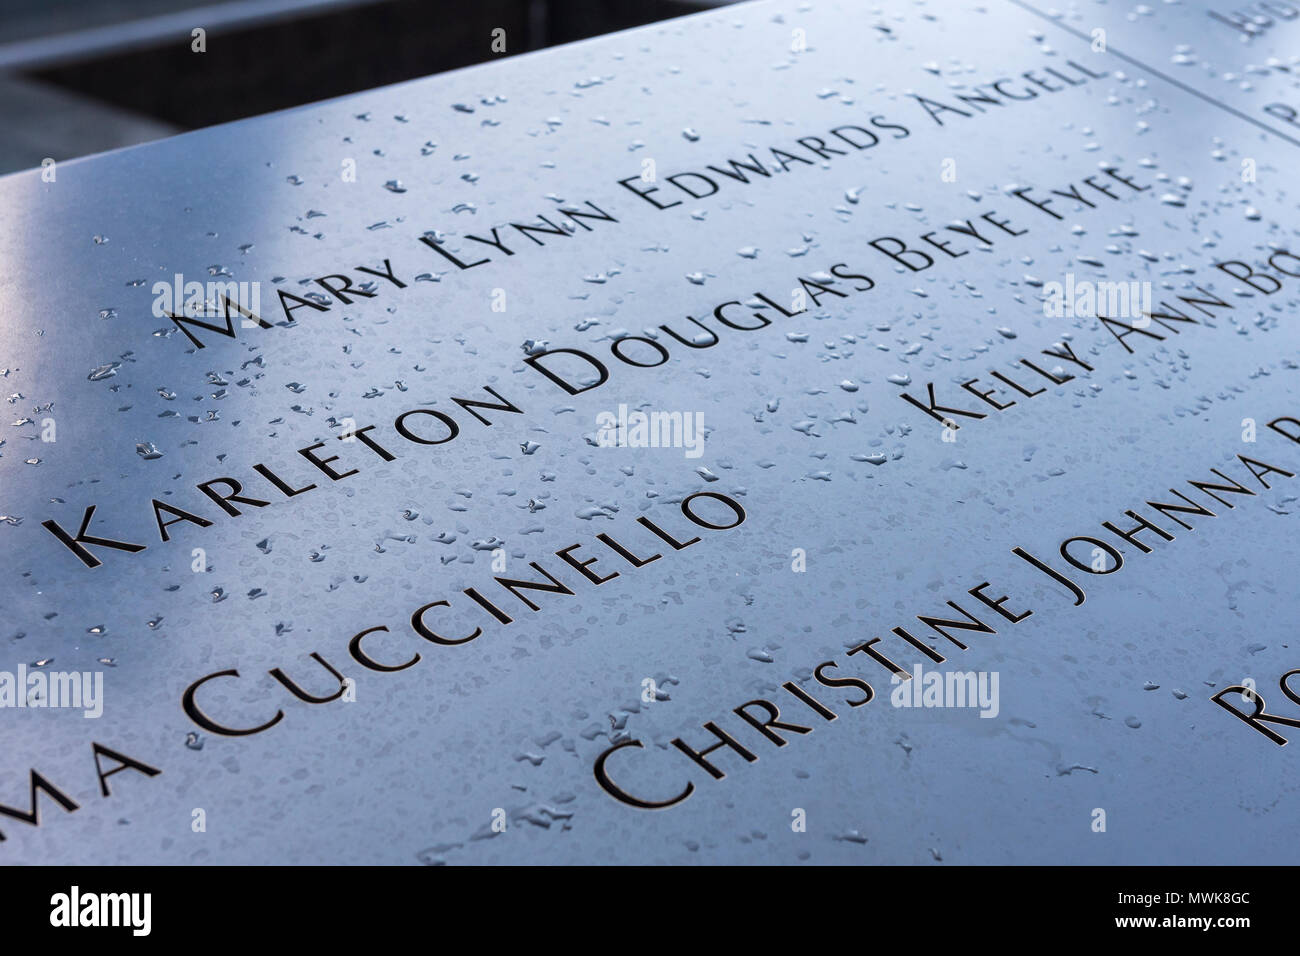 Les noms des victimes du 11 septembre sur les parapets, piscine 11 septembre National Memorial & Museum, New York, USA Banque D'Images